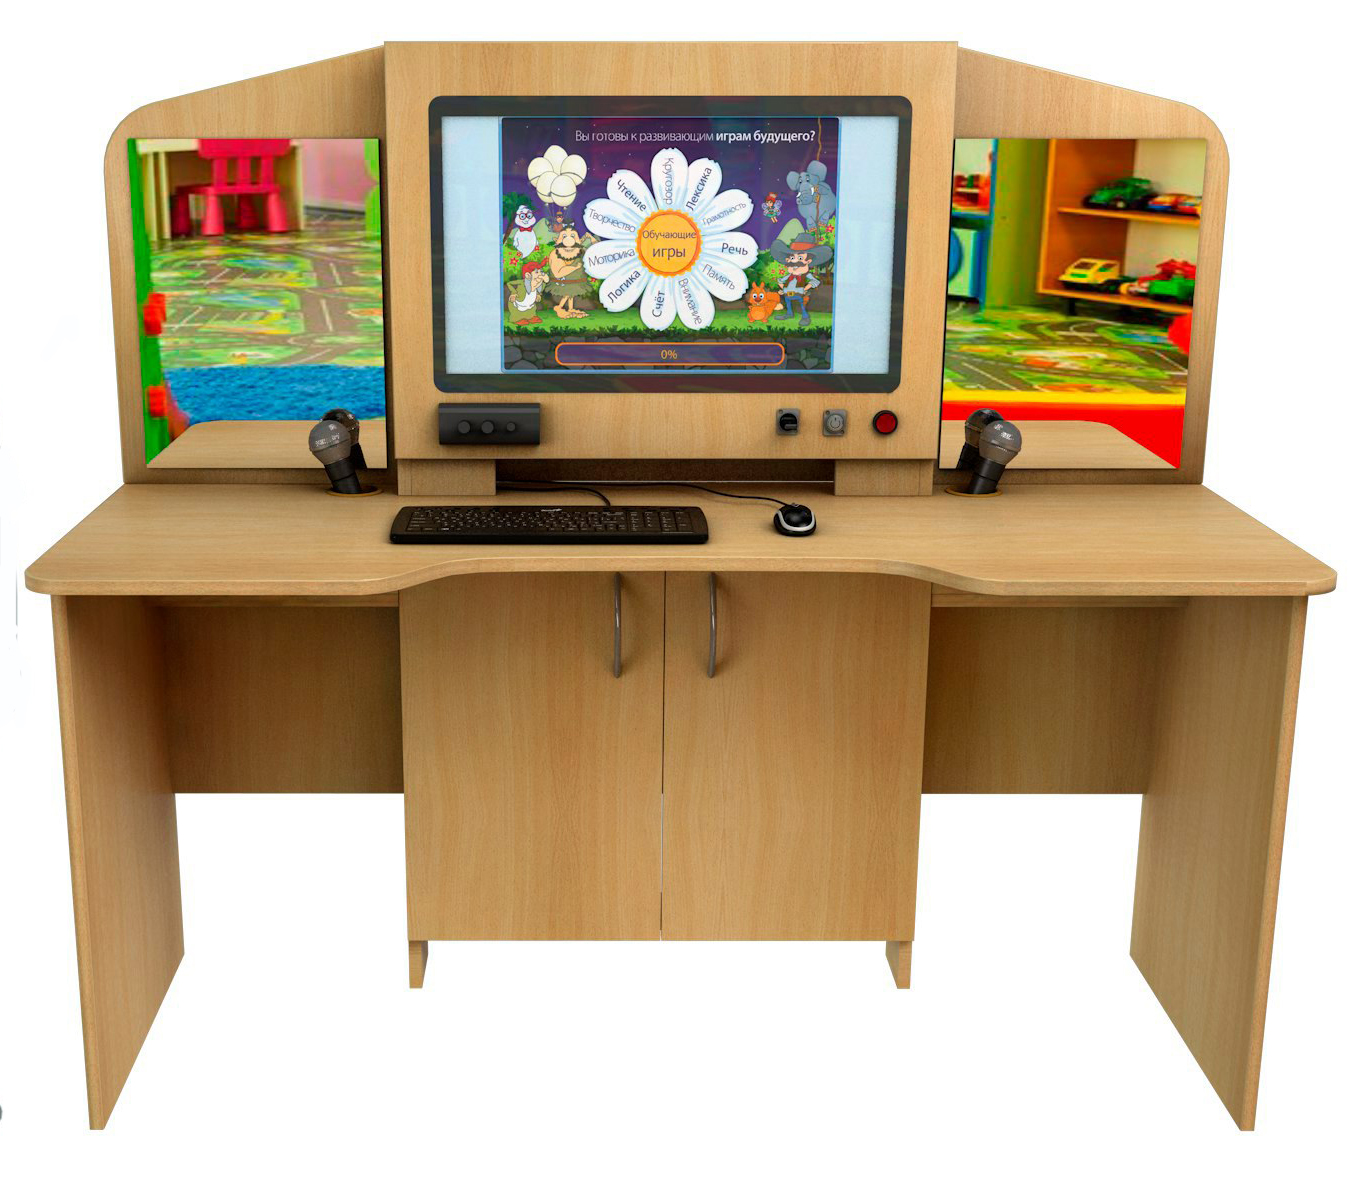 Интерактивный мультимедийный логопедический комплекс-стол 